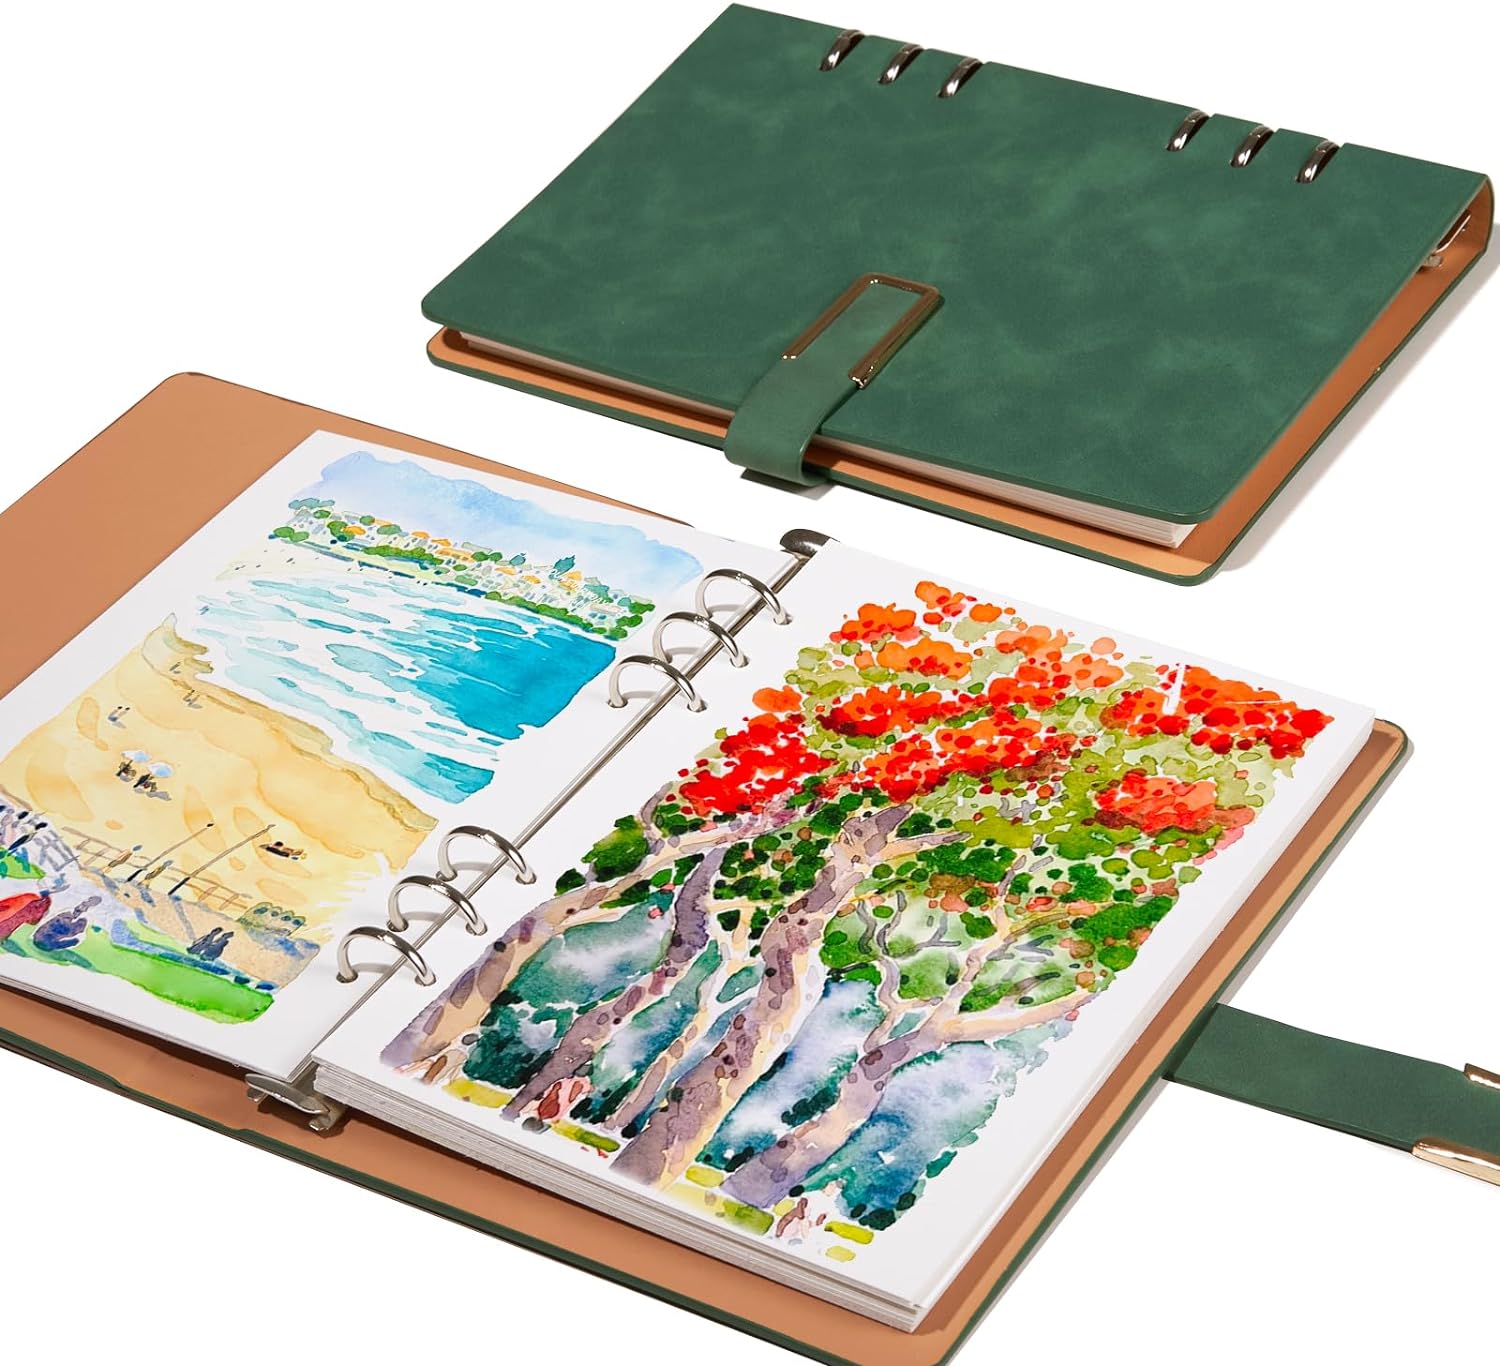 Lightwish Aquarell-Tagebuch/Skizzenbuch, 100 % Baumwolle, säurefrei, 300 g/m², heißgepresstes Aquarellpapier, 20 Blatt, 23,5 x 16 cm